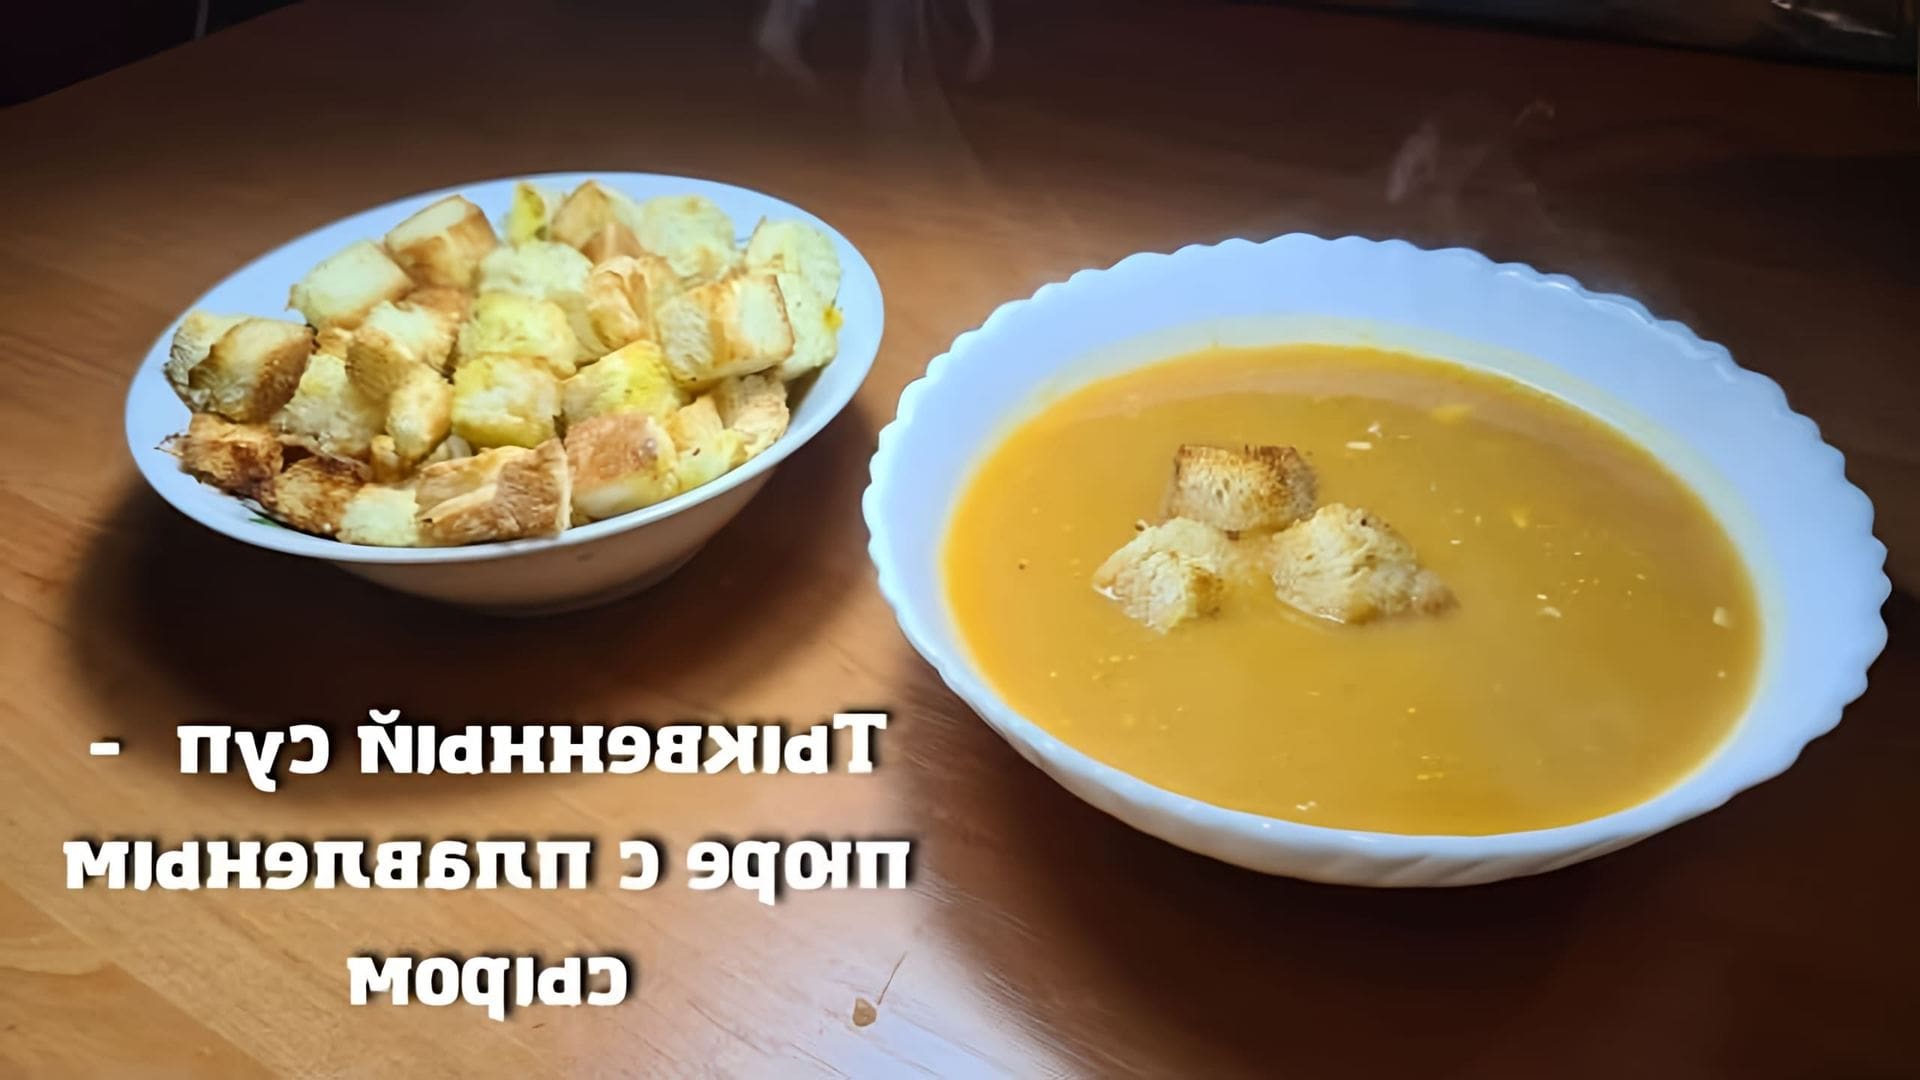 В этом видео демонстрируется рецепт тыквенного супа с плавленым сыром